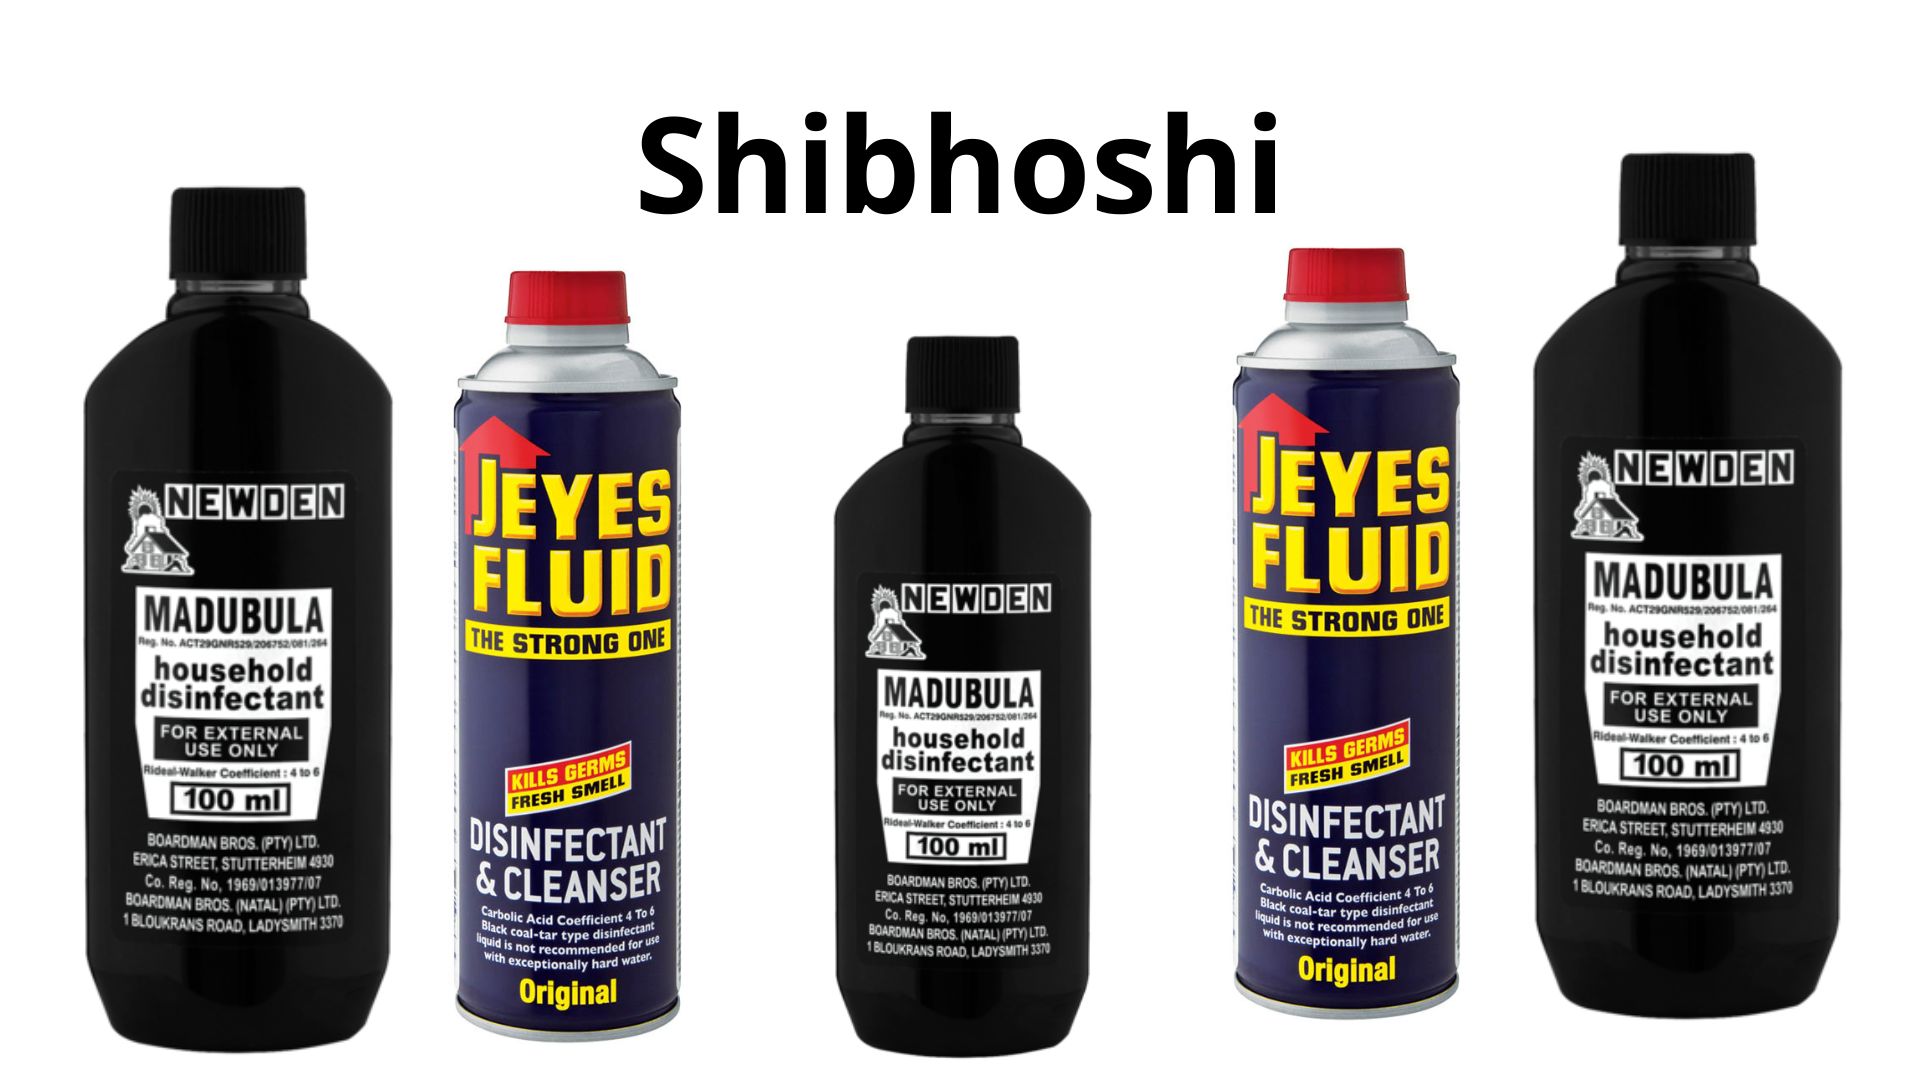 Shibhoshi